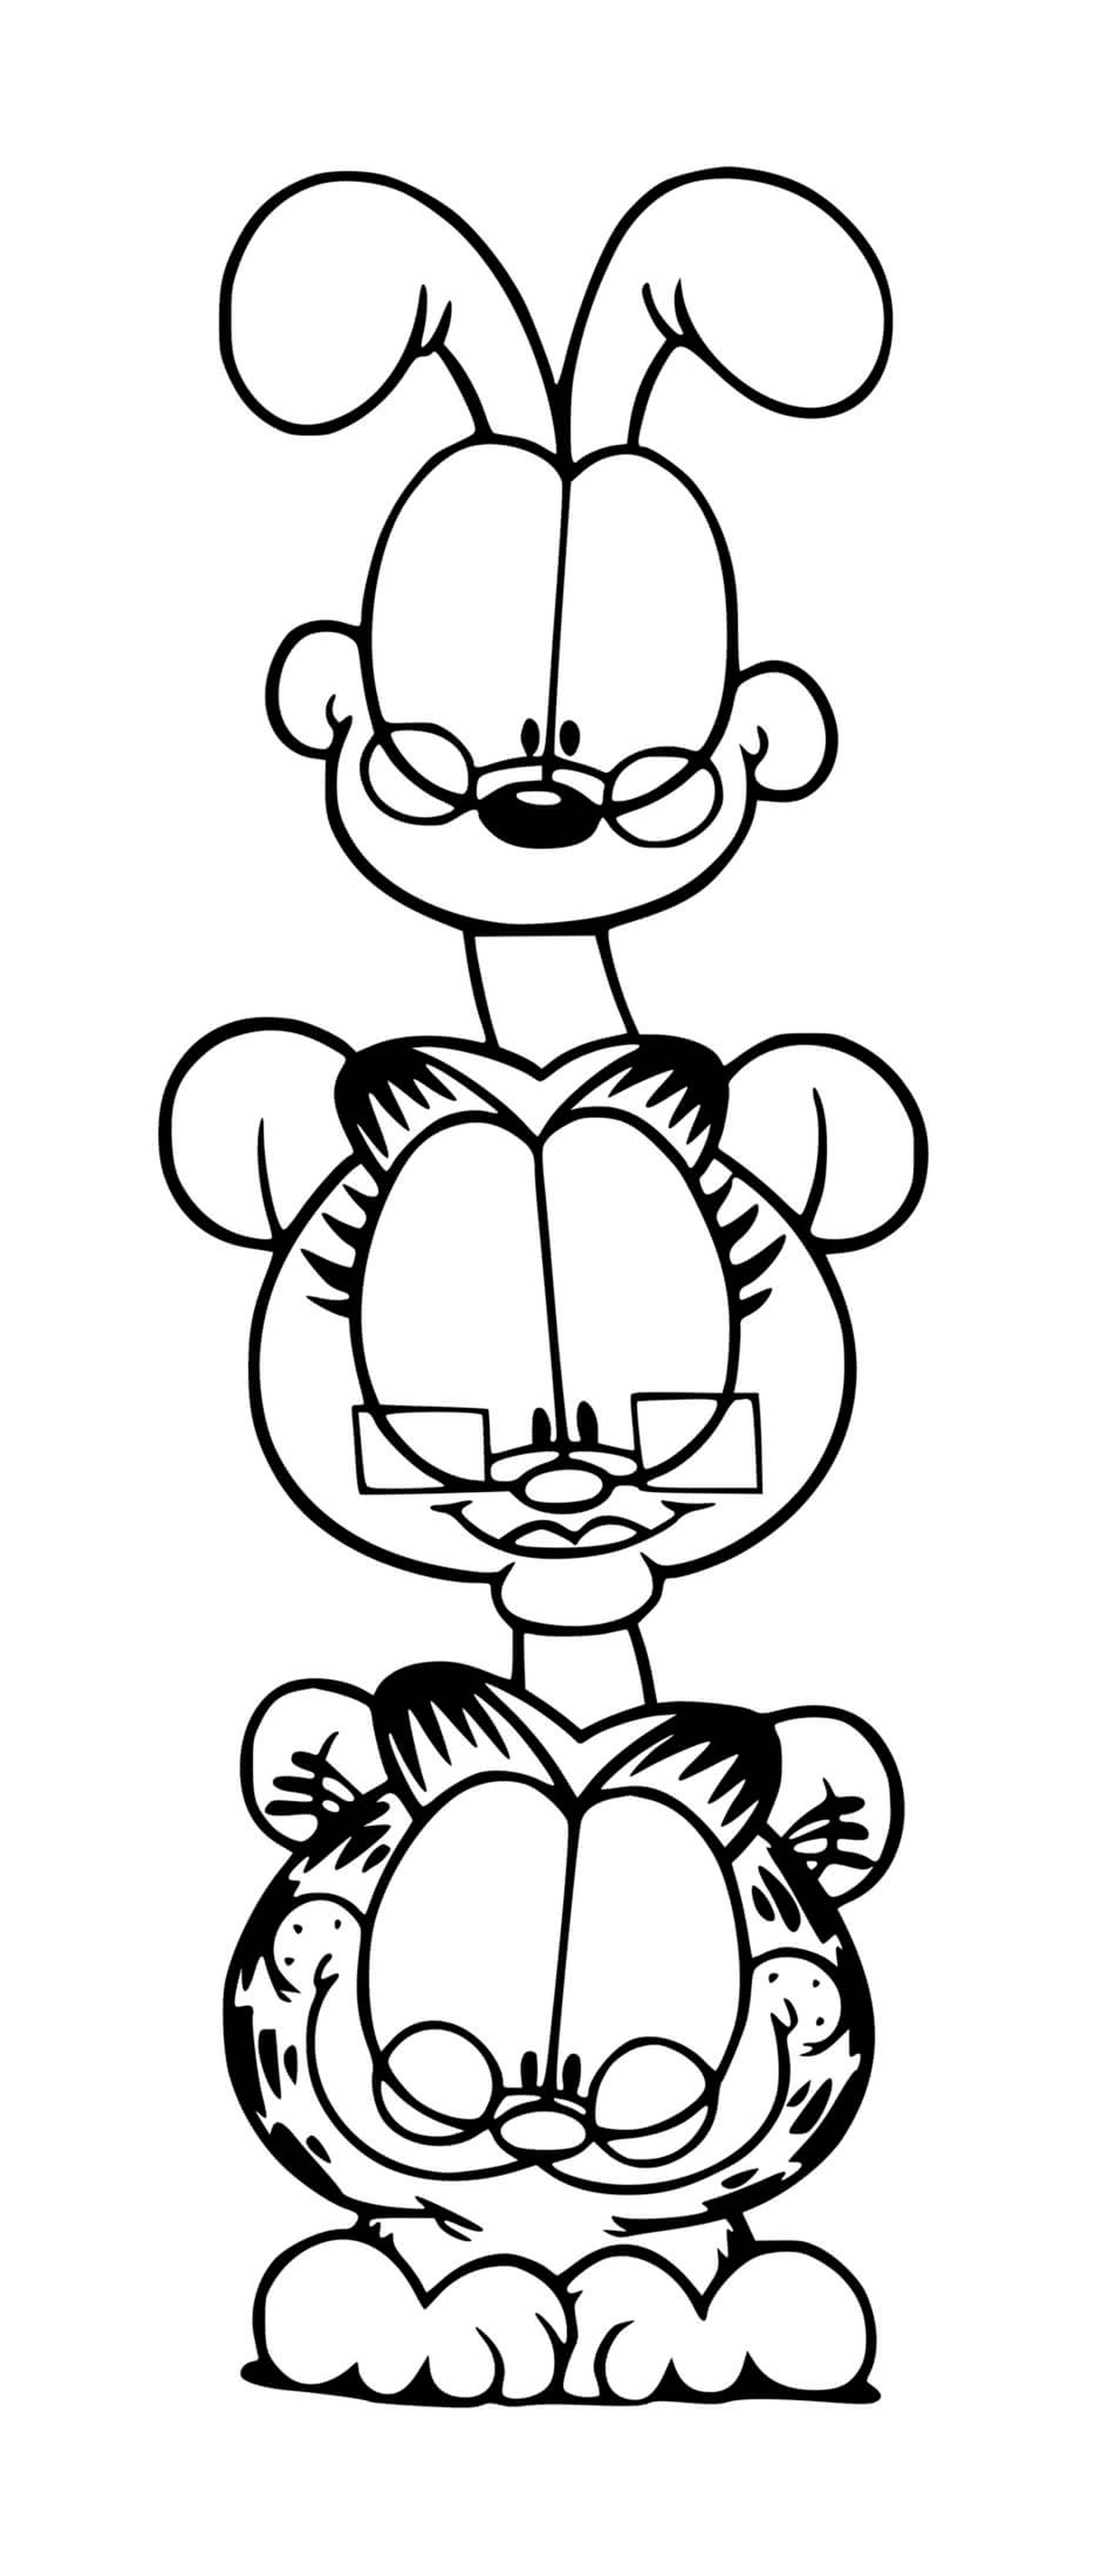  Garfield, Odie e Nermal come complici 